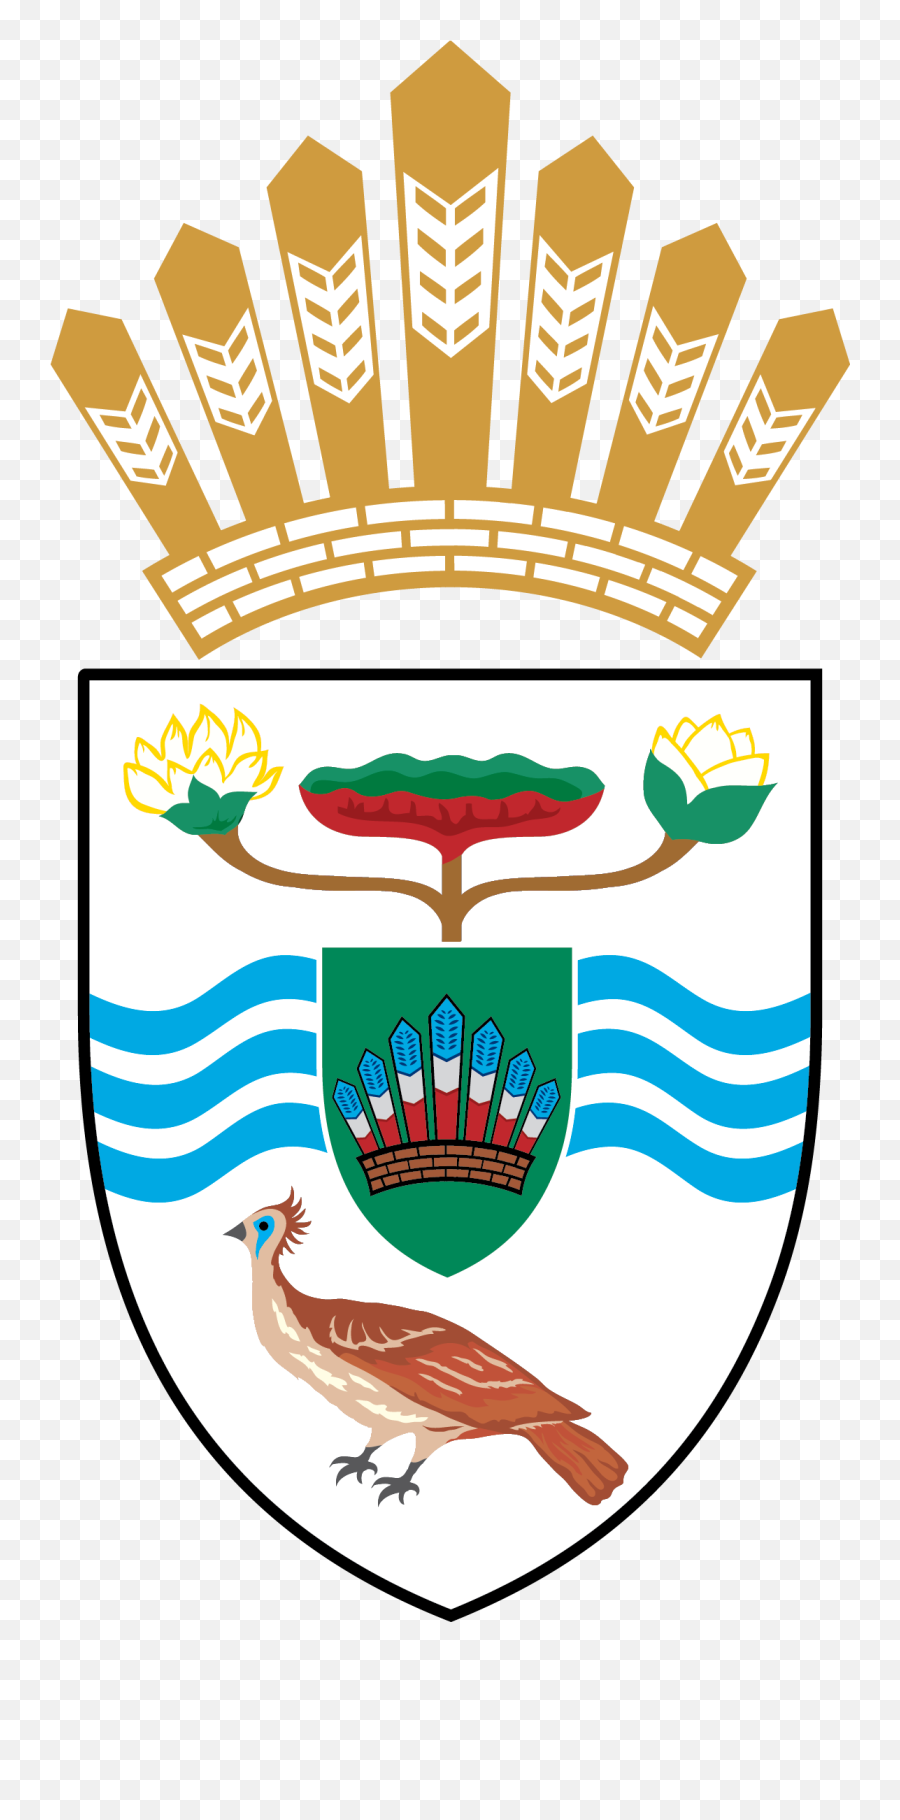 Presidential Arms Guyana - Department Of Environment Guyana Emoji,Guyana Flag Emoji